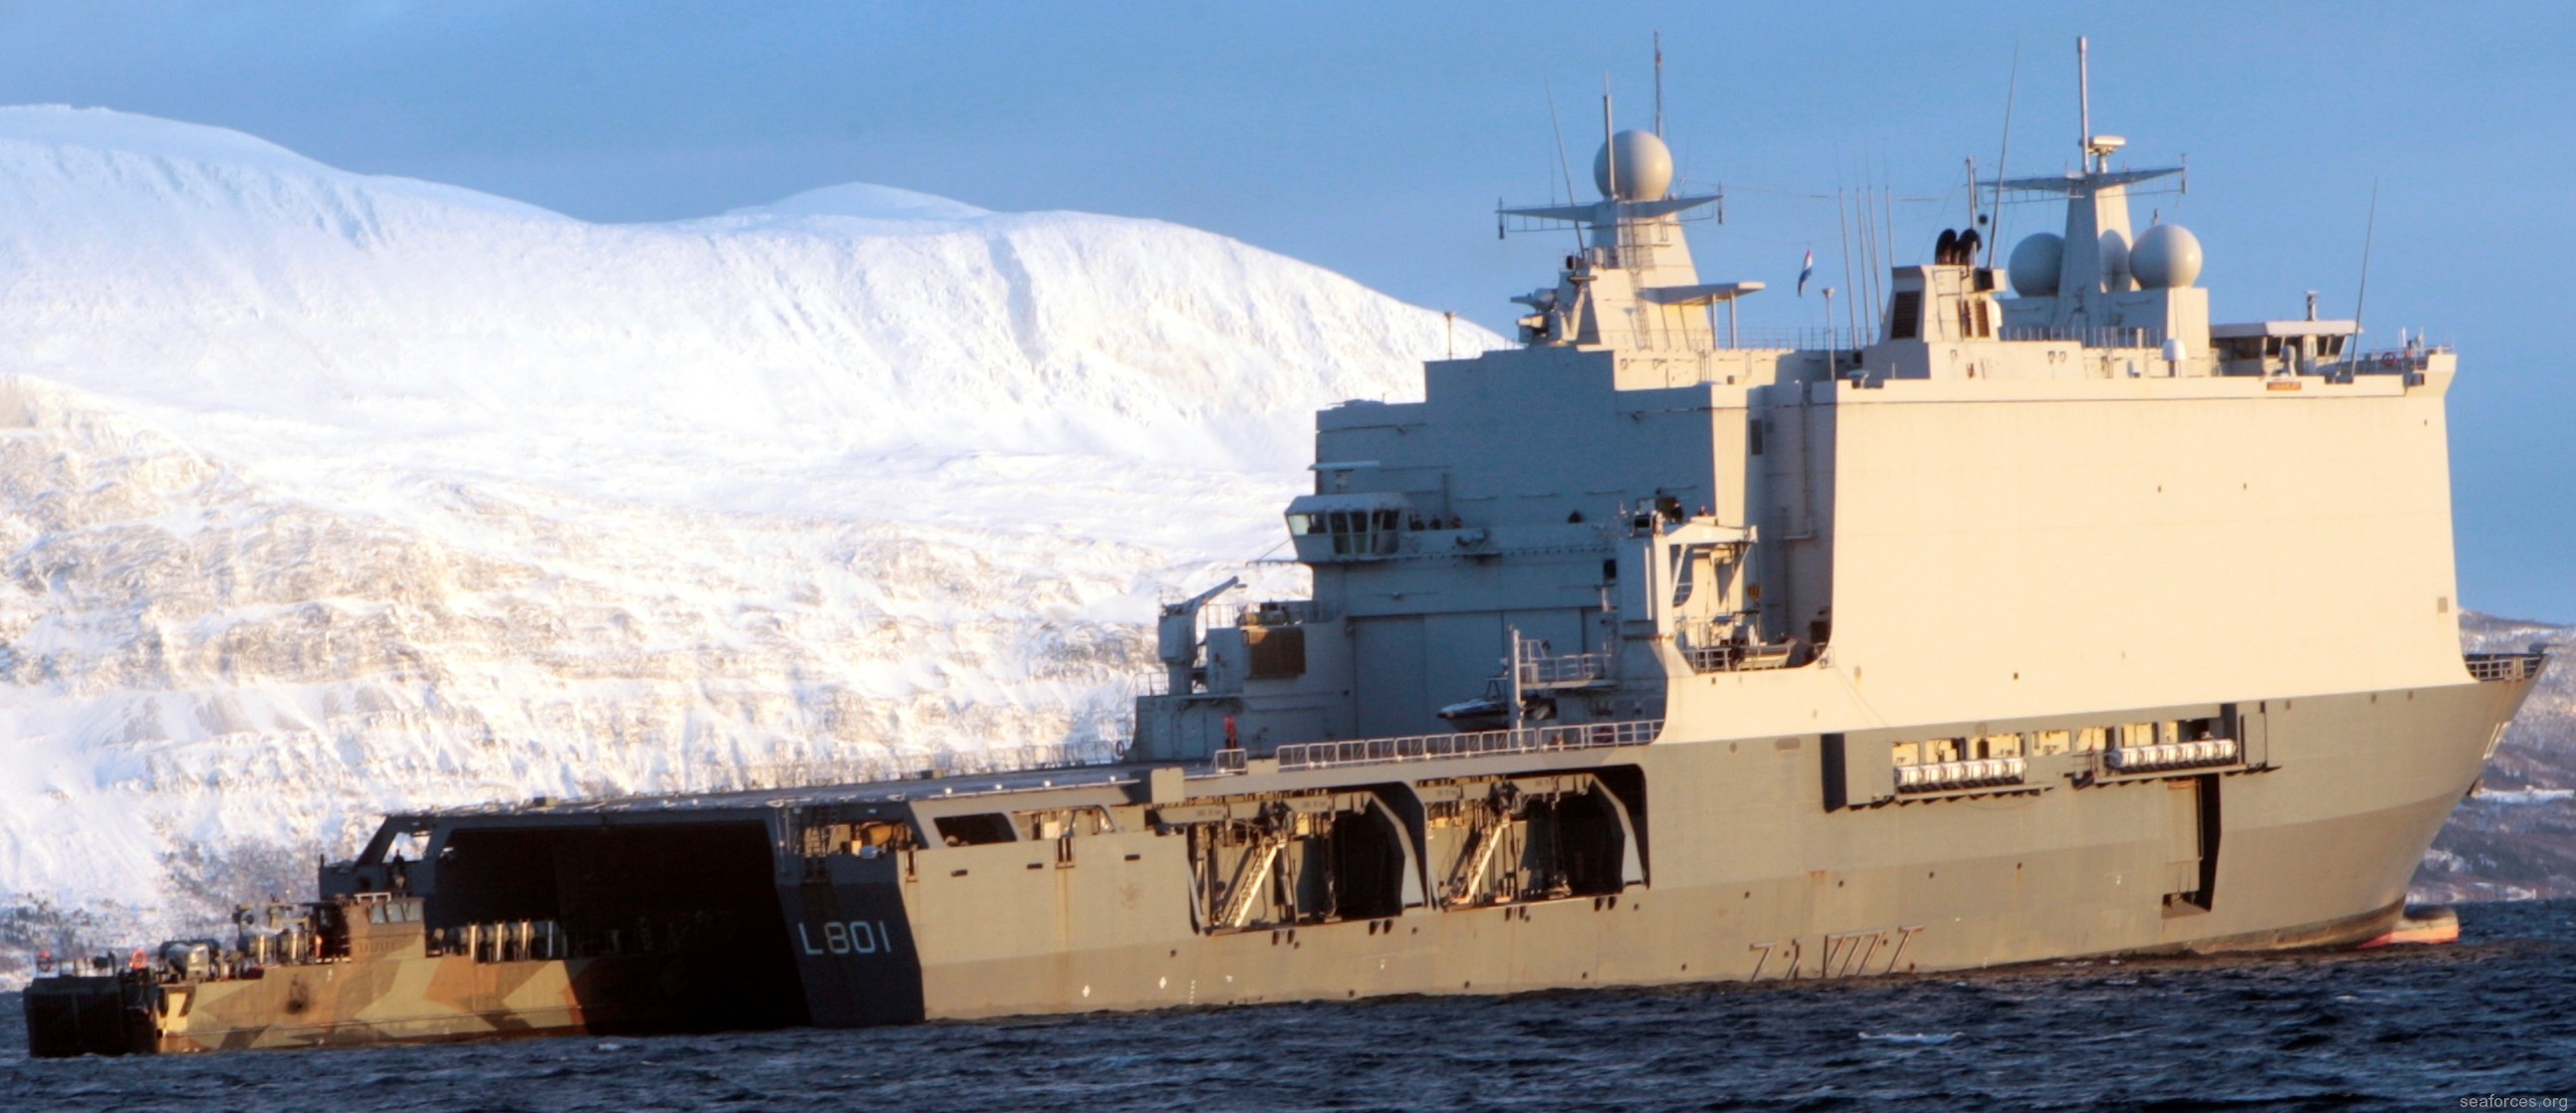 l-801 hnlms johan de witt amphibious ship landing platform dock lpd royal netherlands navy 26 well deck operations